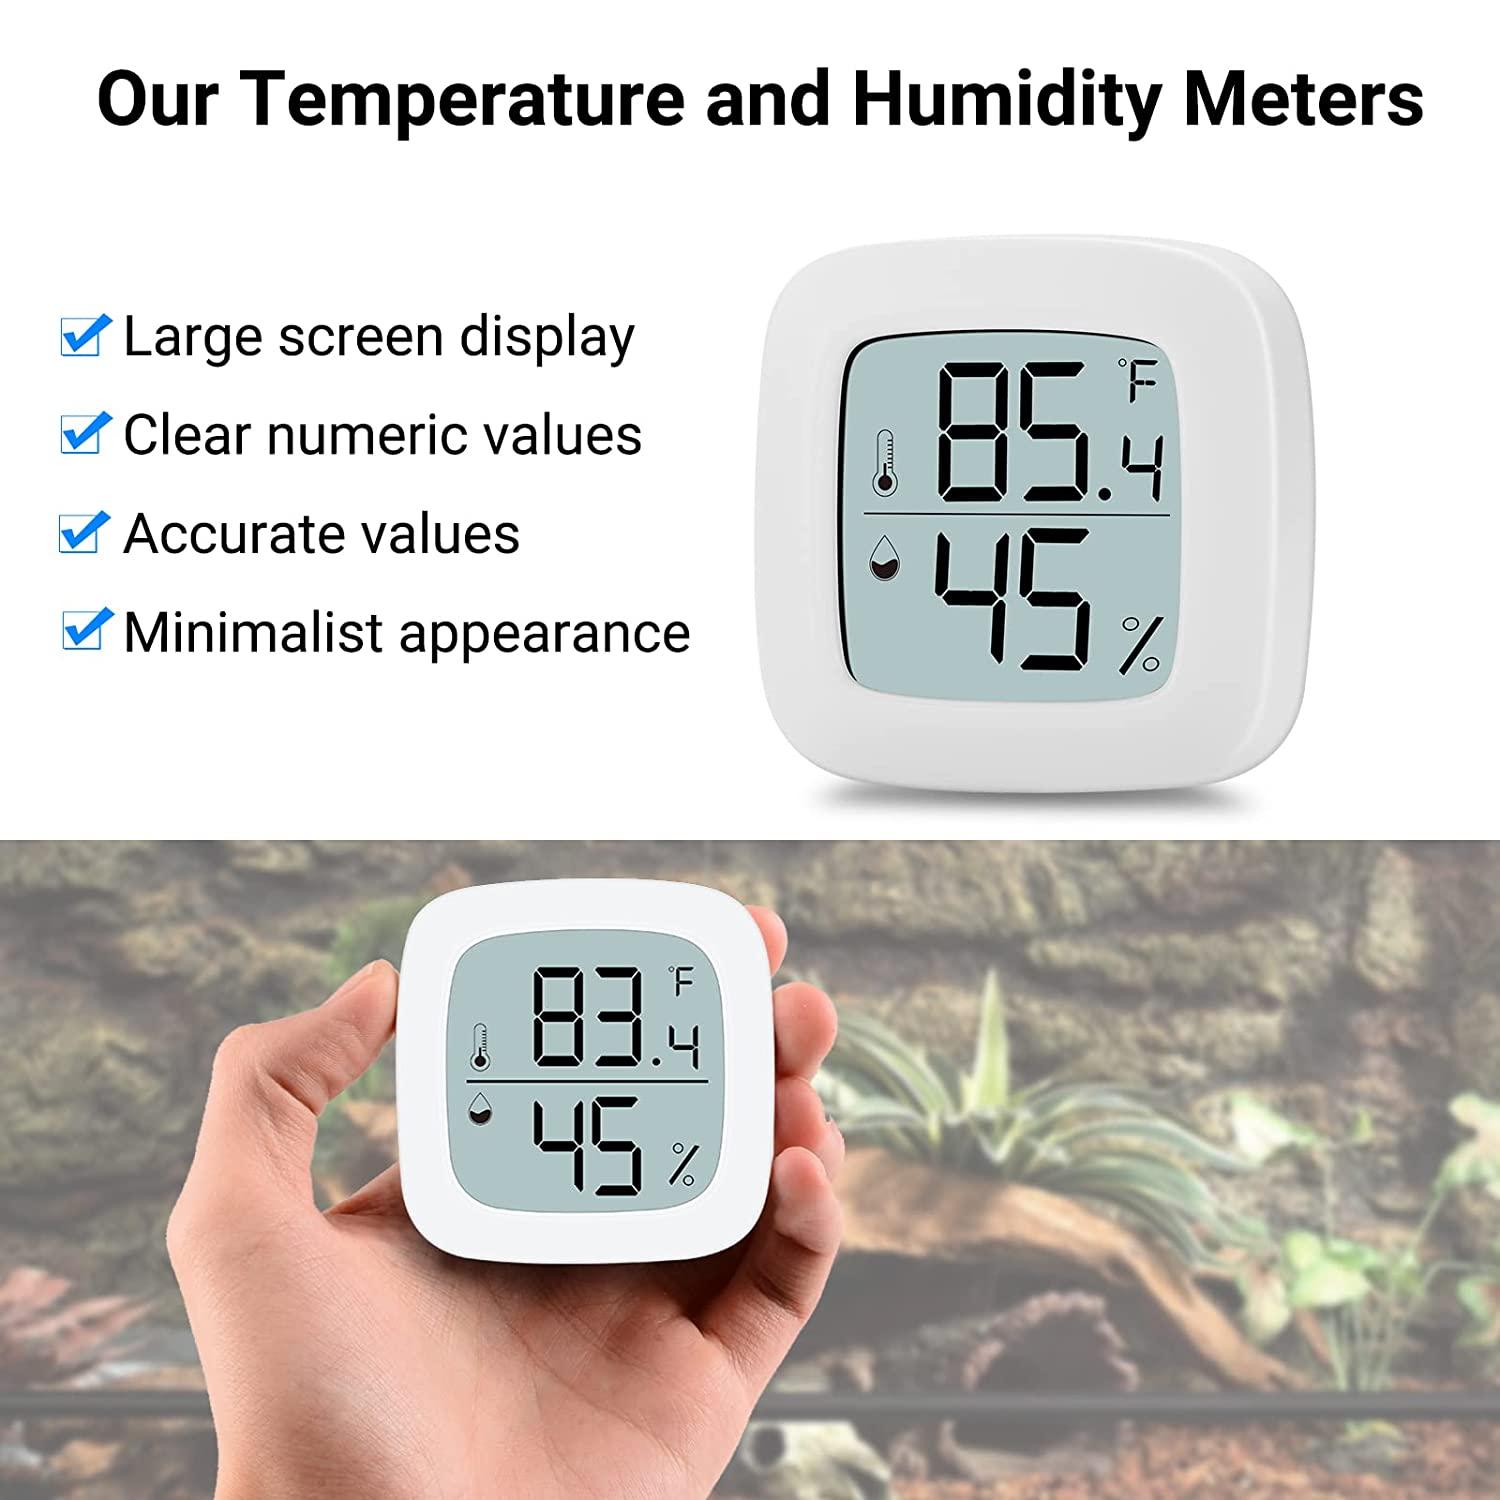 Aggforbl Digital Display Reptile Terrarium Thermometer Hygrometer